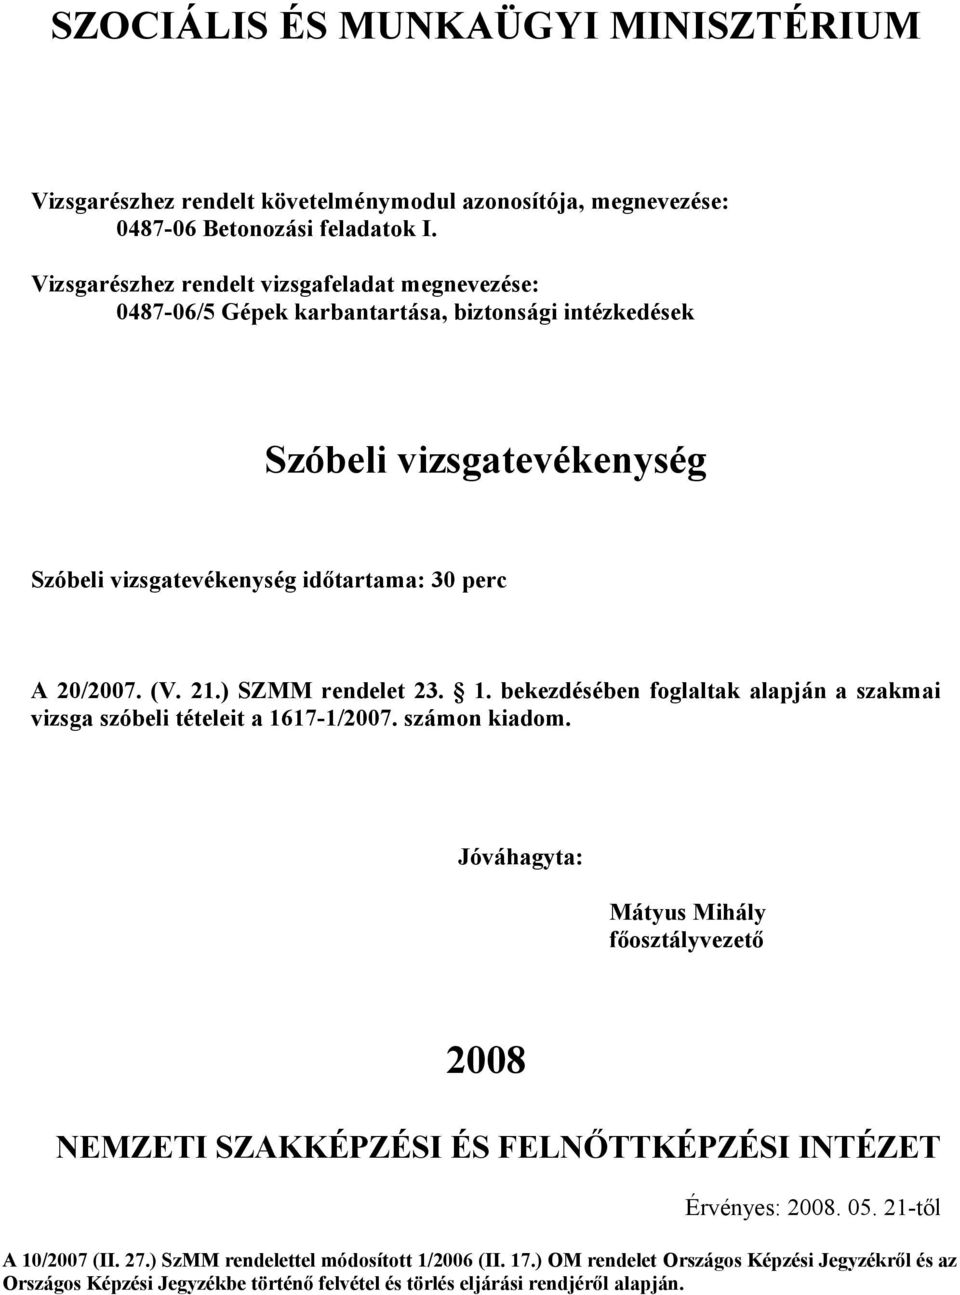 21.) SZMM rendelet 23. 1. bekezdésében foglaltak alapján a szakmai vizsga szóbeli tételeit a 1617-1/2007. számon kiadom.